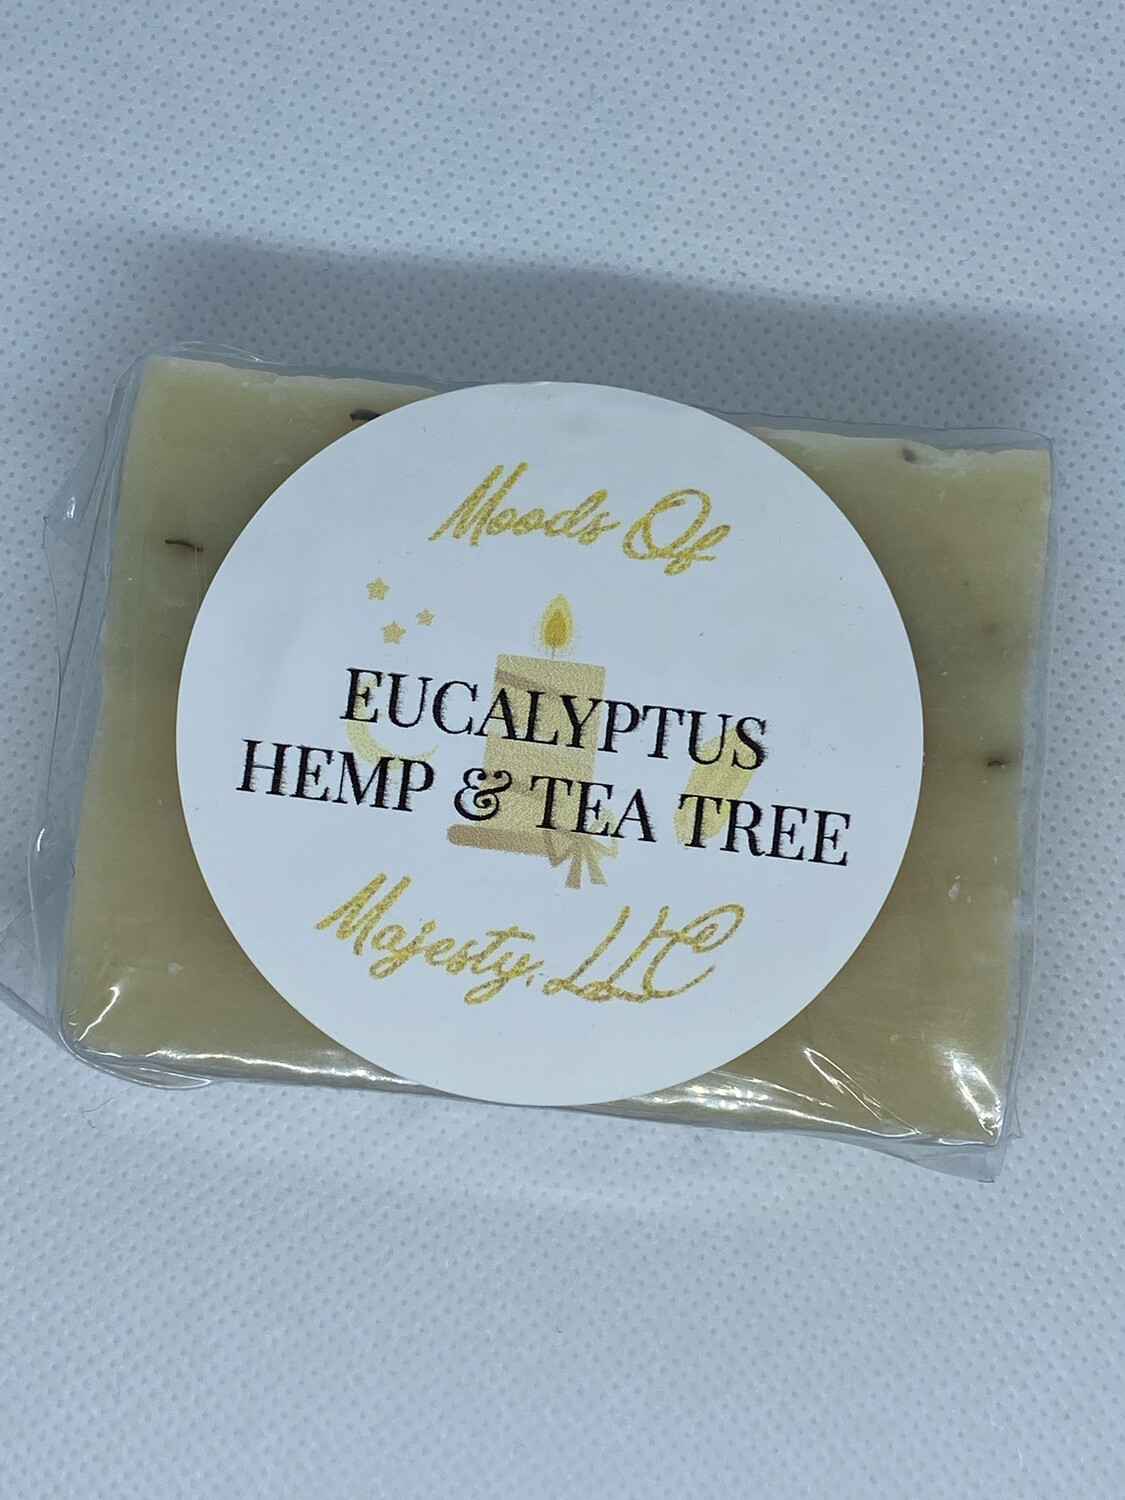 Eucalyptus Hemp & Tea Tree Soap Bar